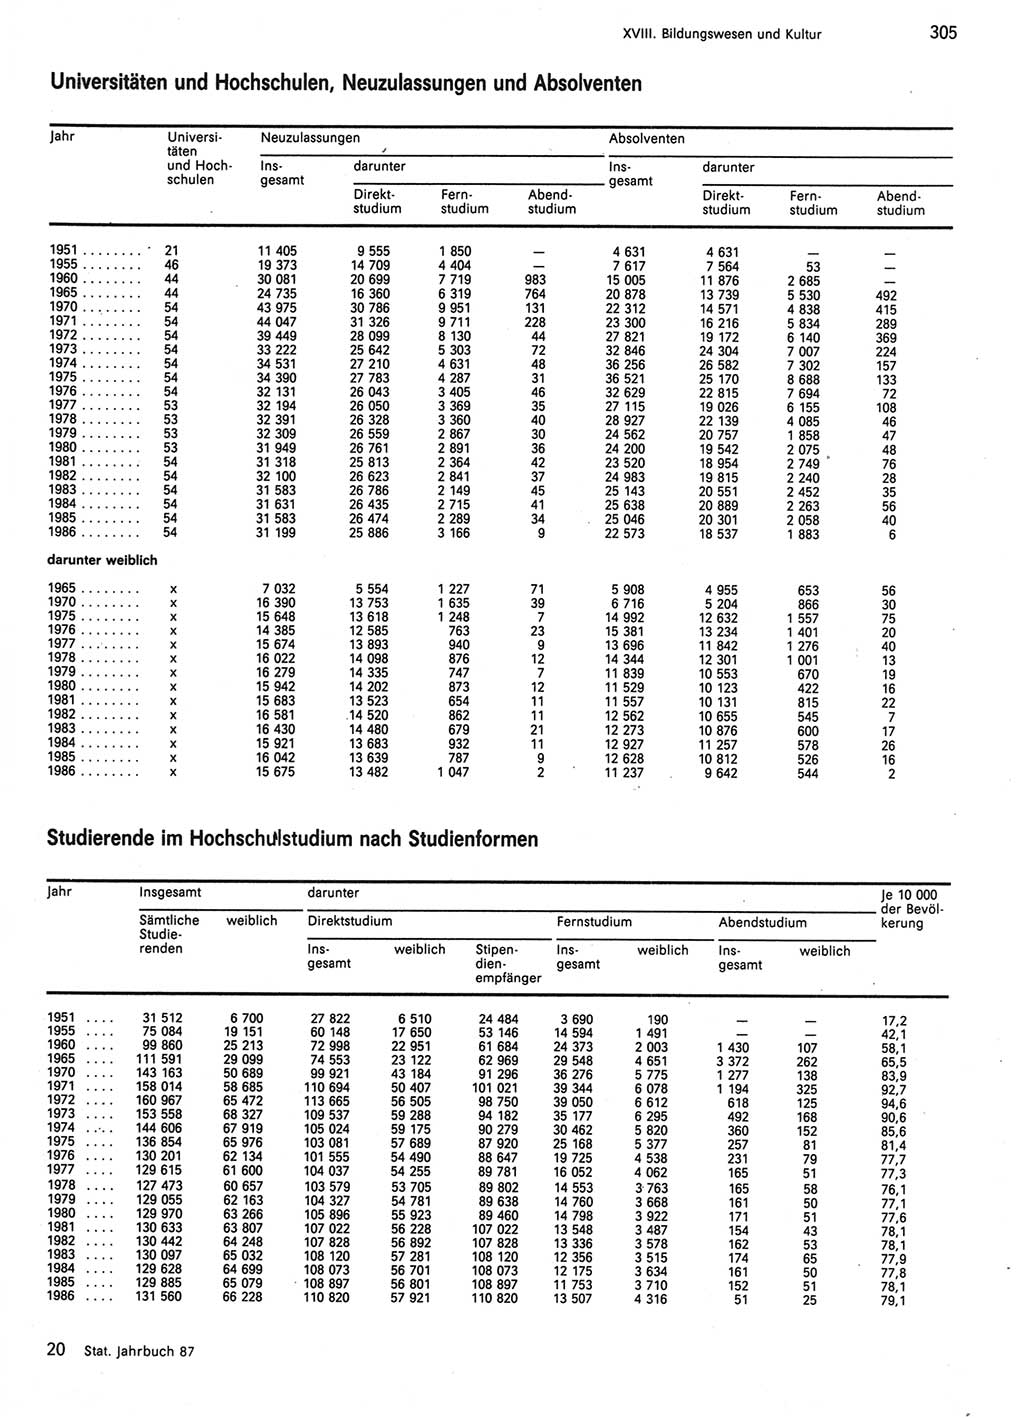 Statistisches Jahrbuch der Deutschen Demokratischen Republik (DDR) 1987, Seite 305 (Stat. Jb. DDR 1987, S. 305)